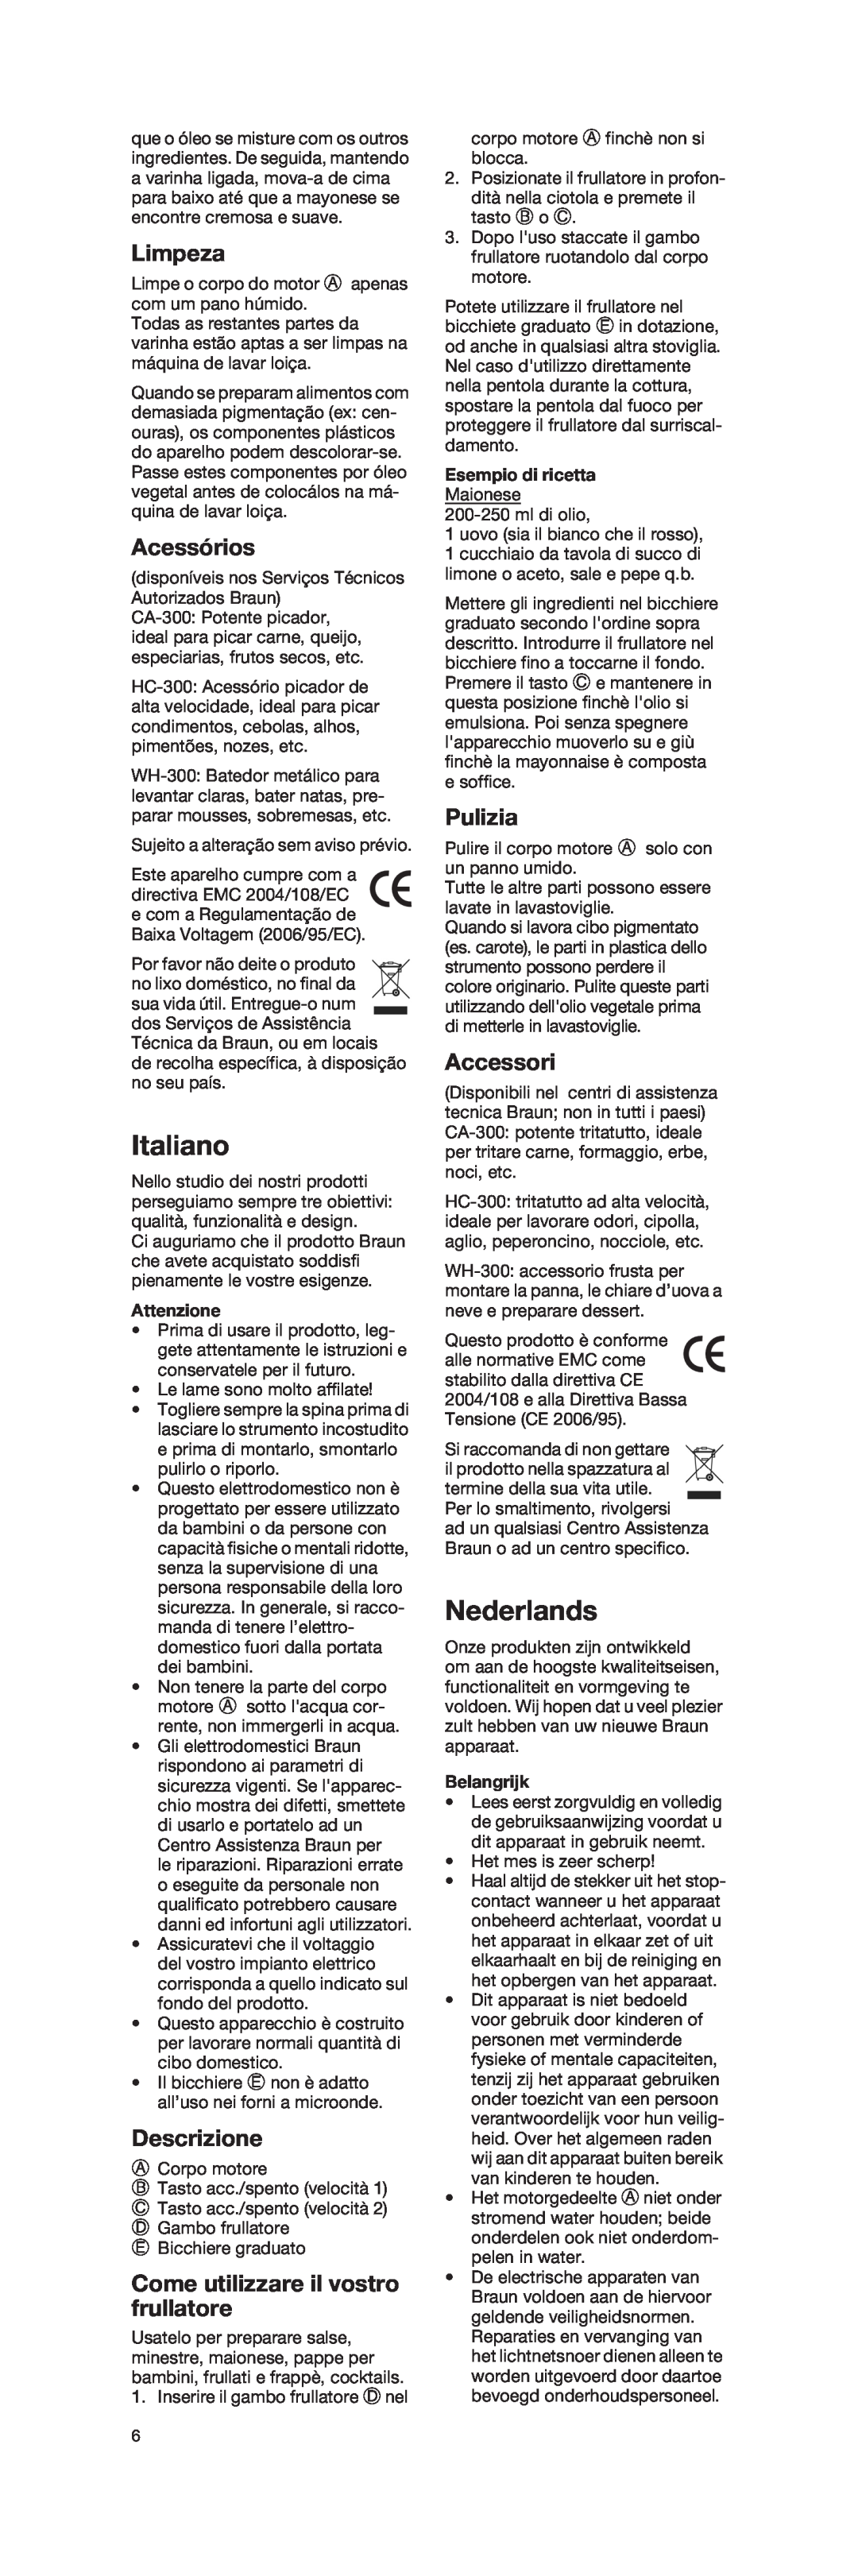 Braun 4162 manual Italiano, Nederlands, Limpeza, Acessórios, Descrizione, Come utilizzare il vostro frullatore, Pulizia 